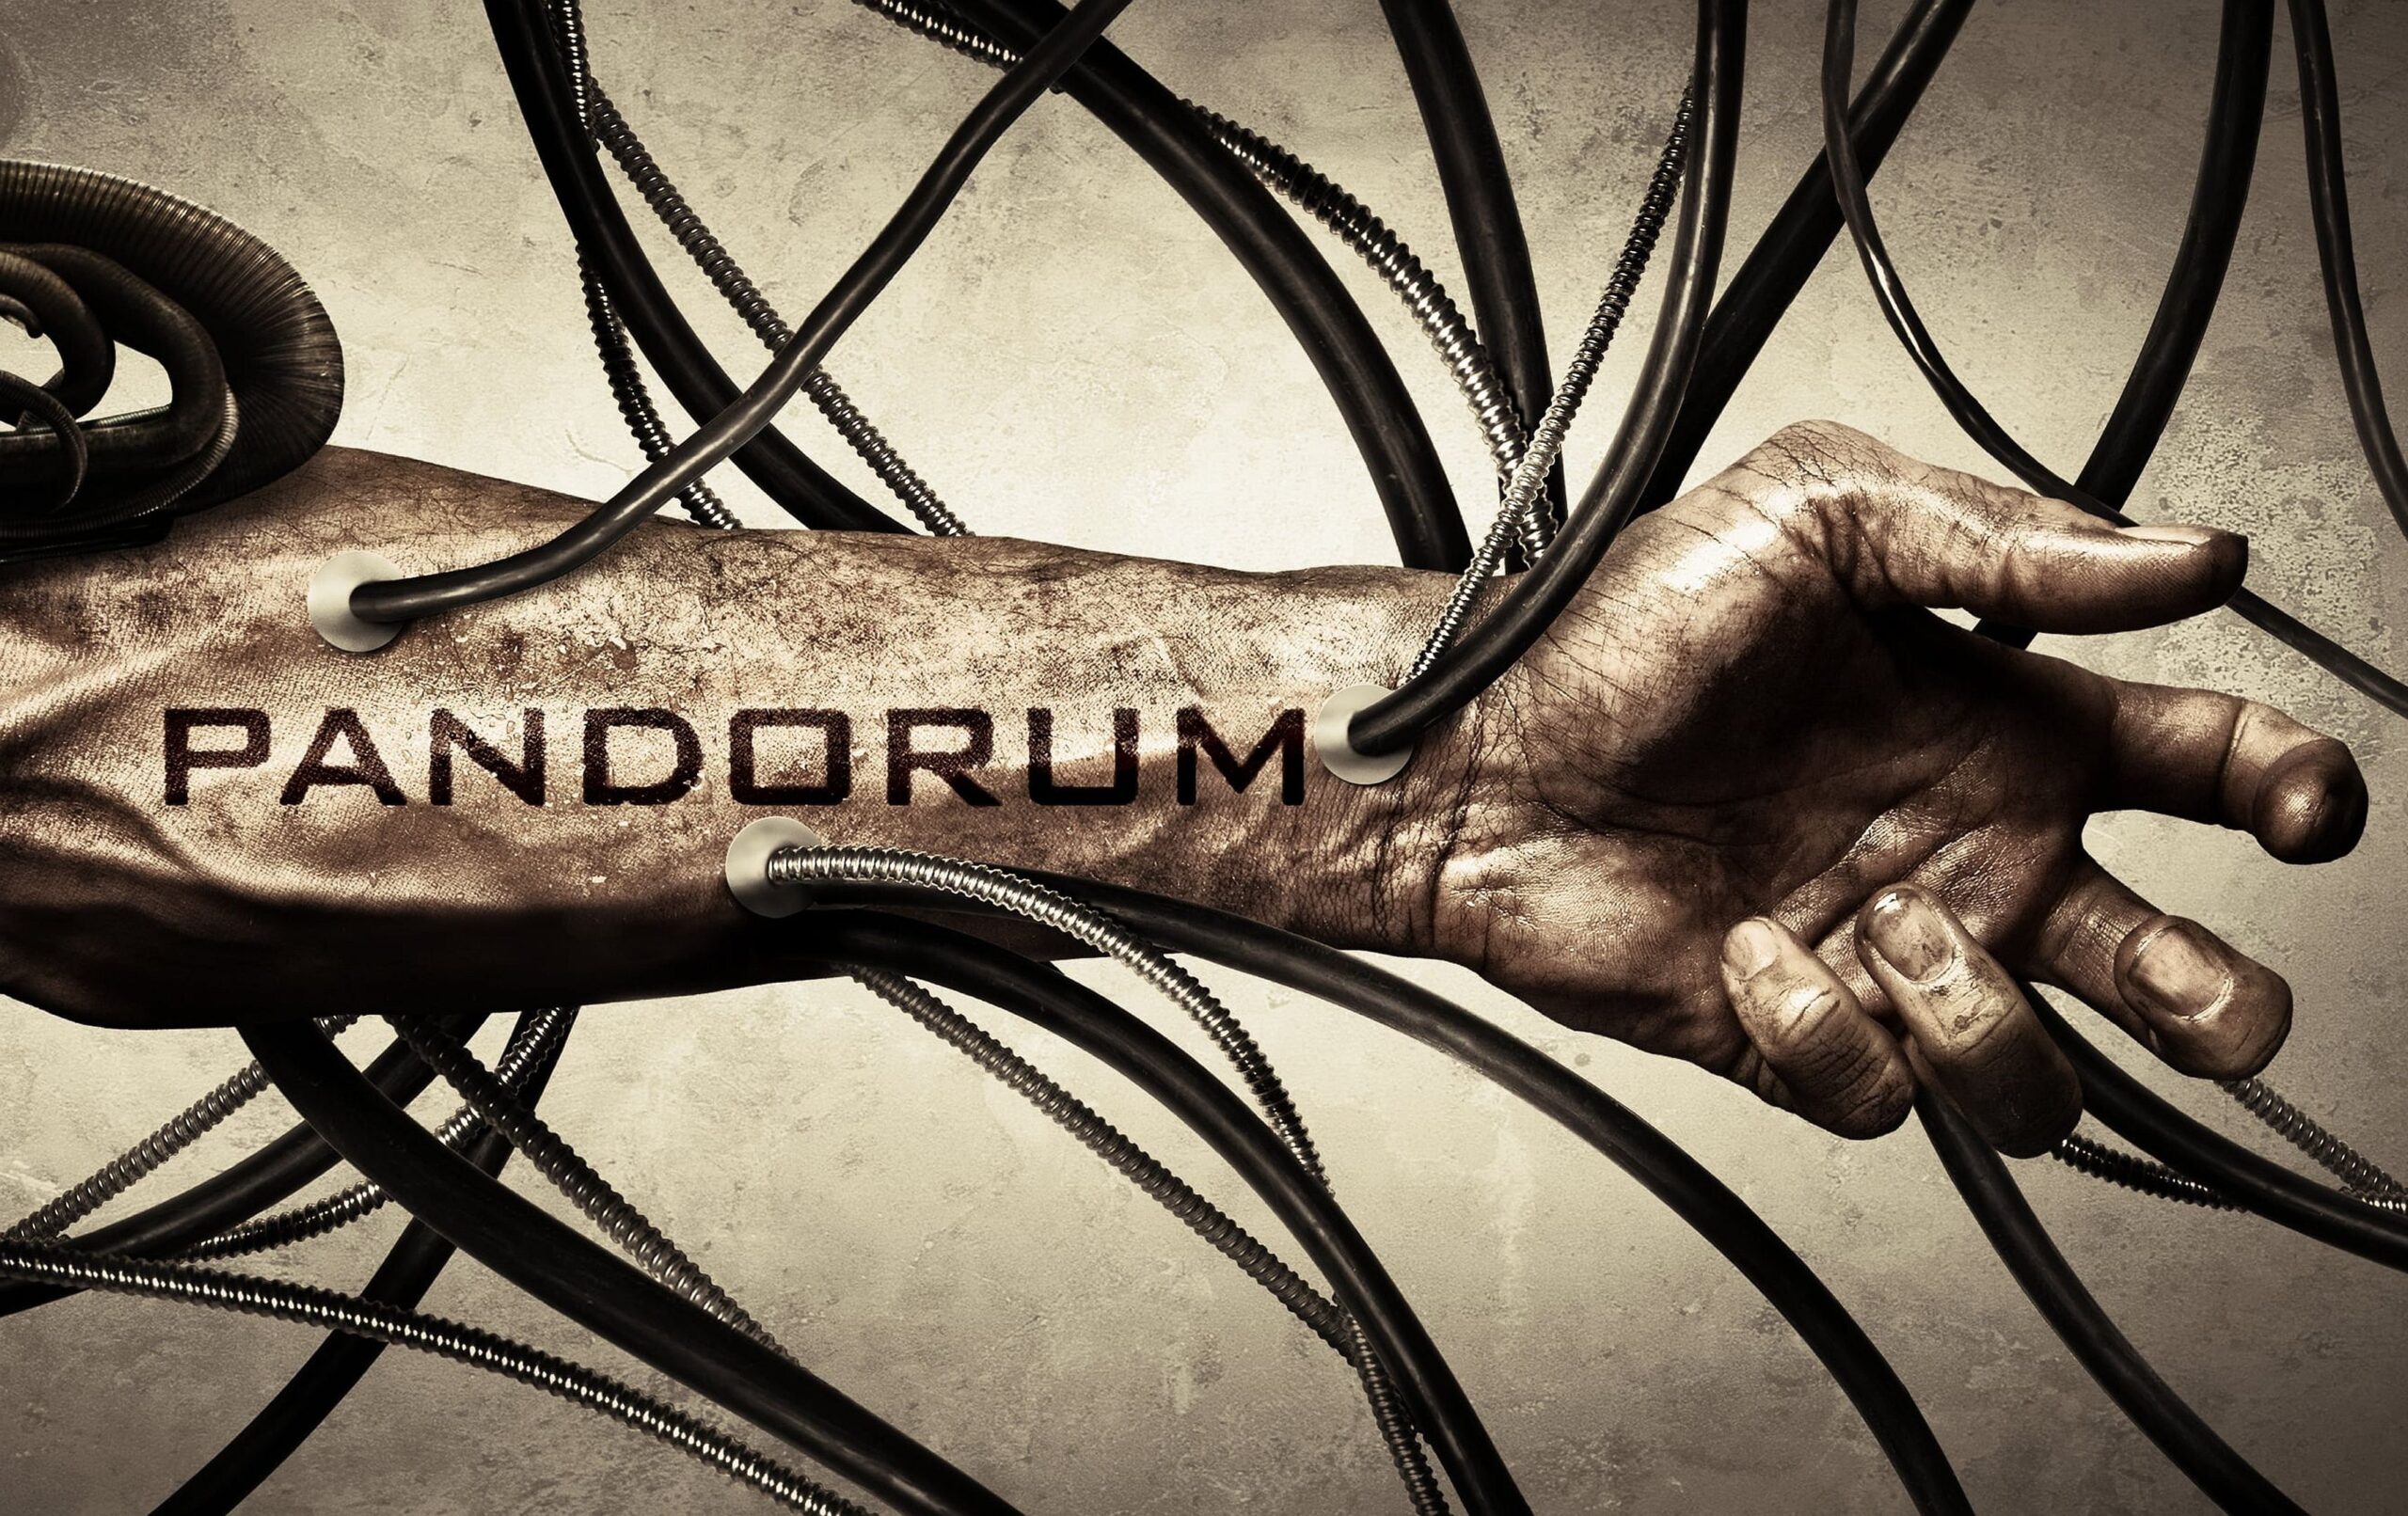 Why should you watch Pandorum